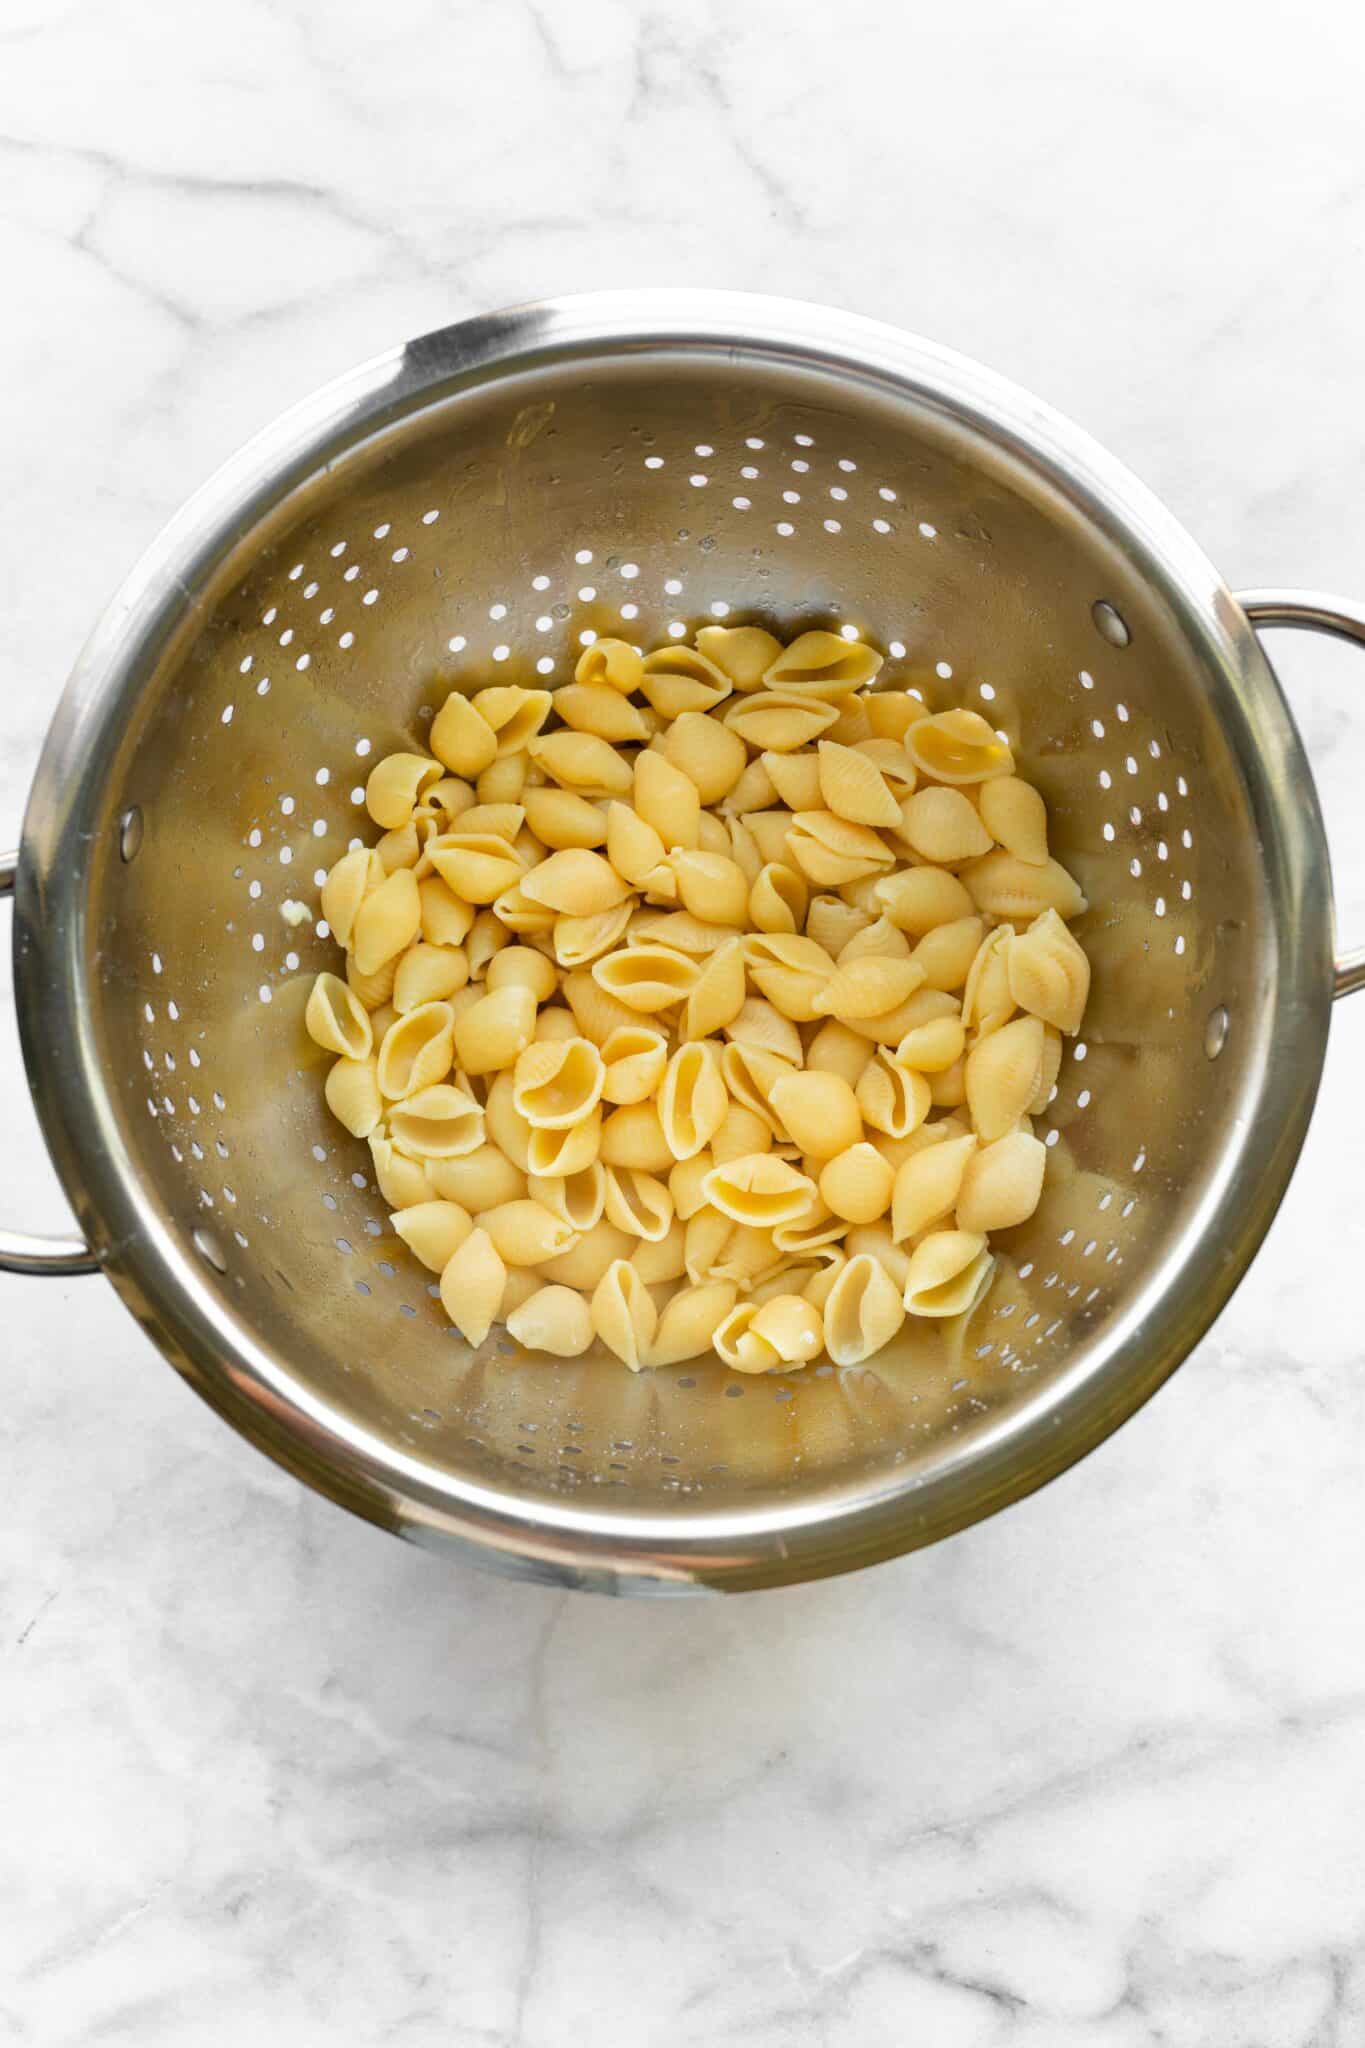 straining gluten free pasta in strainer